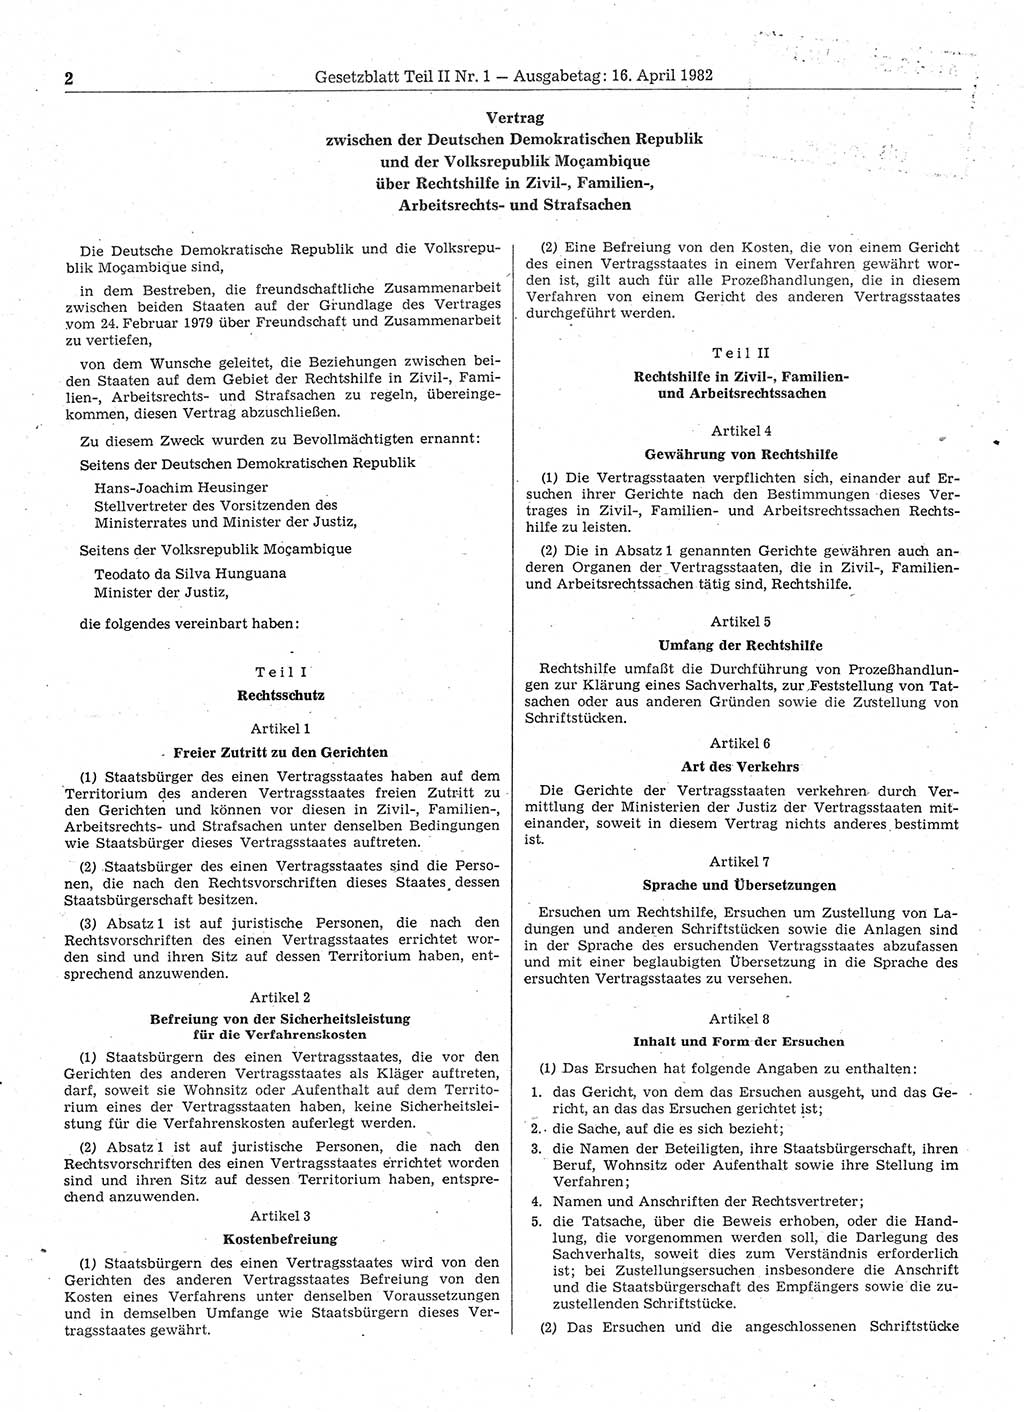 Gesetzblatt (GBl.) der Deutschen Demokratischen Republik (DDR) Teil ⅠⅠ 1982, Seite 2 (GBl. DDR ⅠⅠ 1982, S. 2)